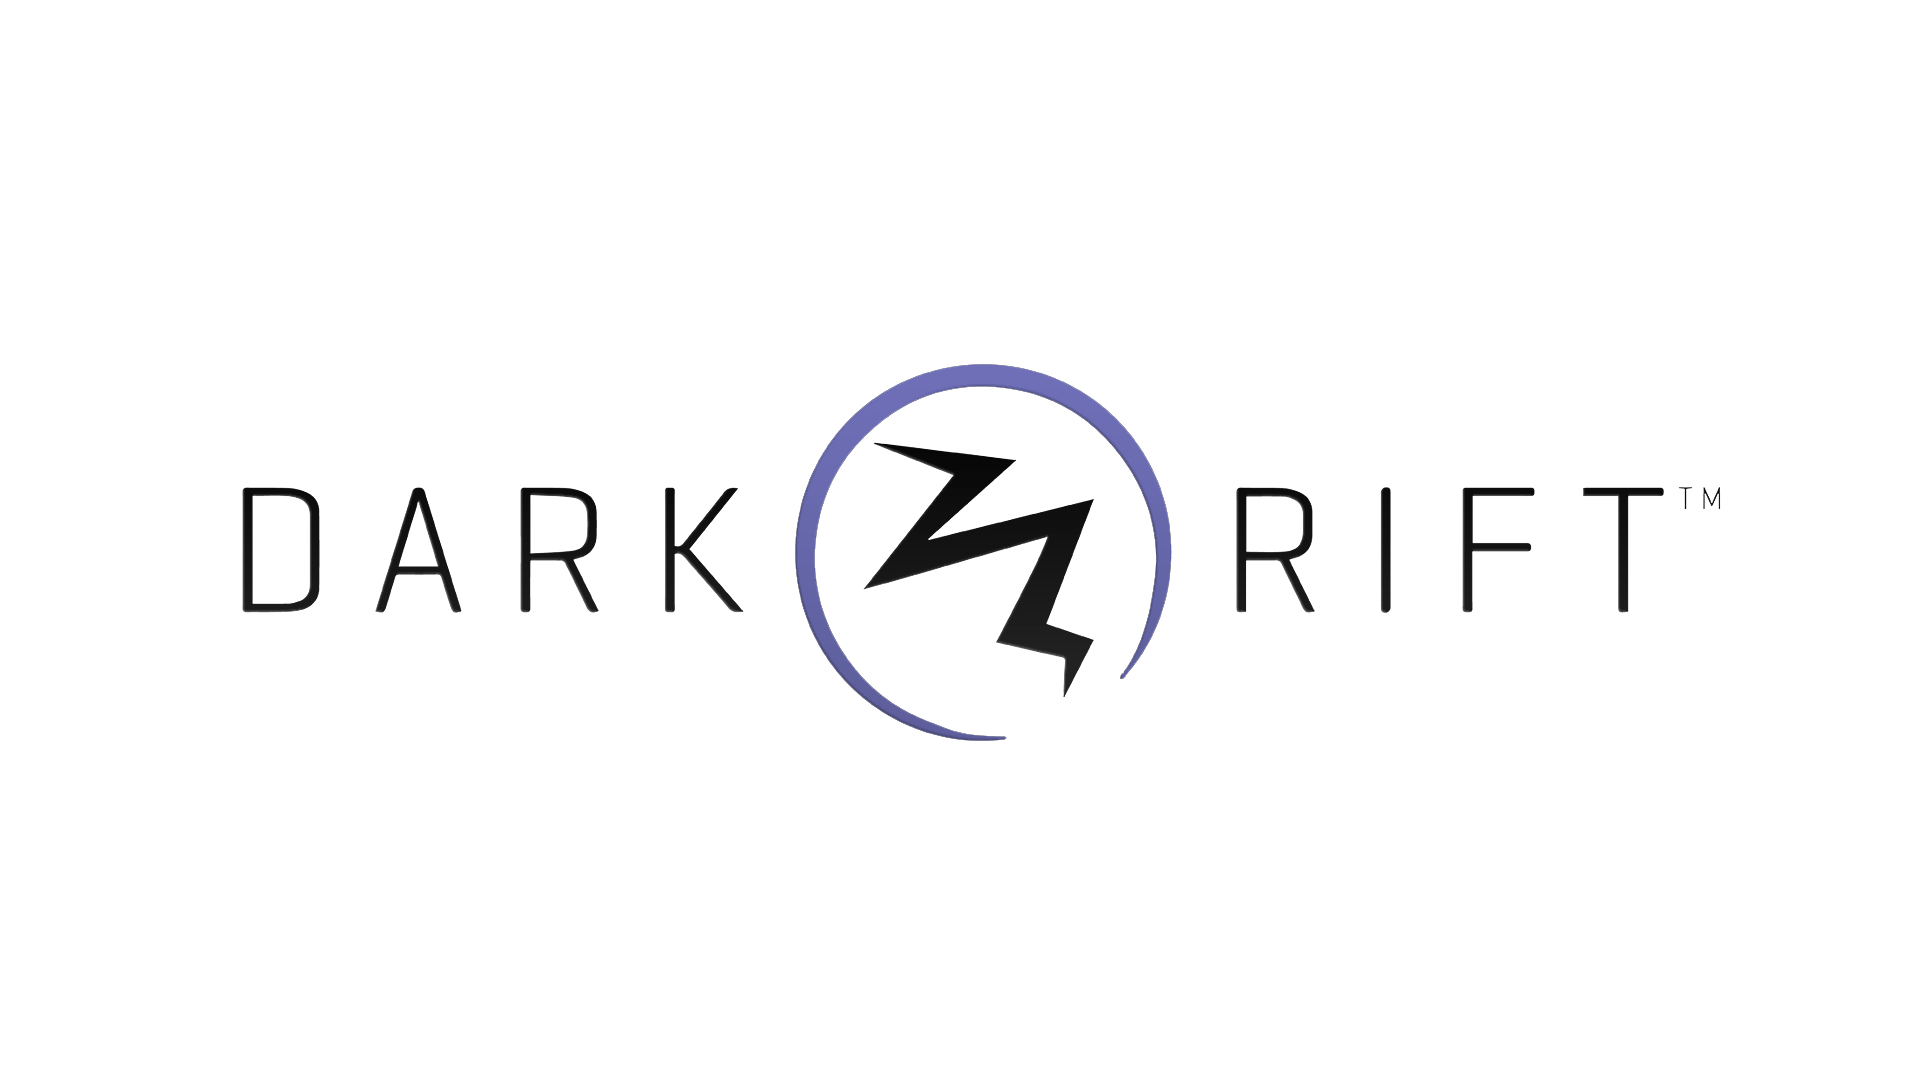 Rift Logo - File:Dark Rift Entertainment Full Logo.png - Wikimedia Commons